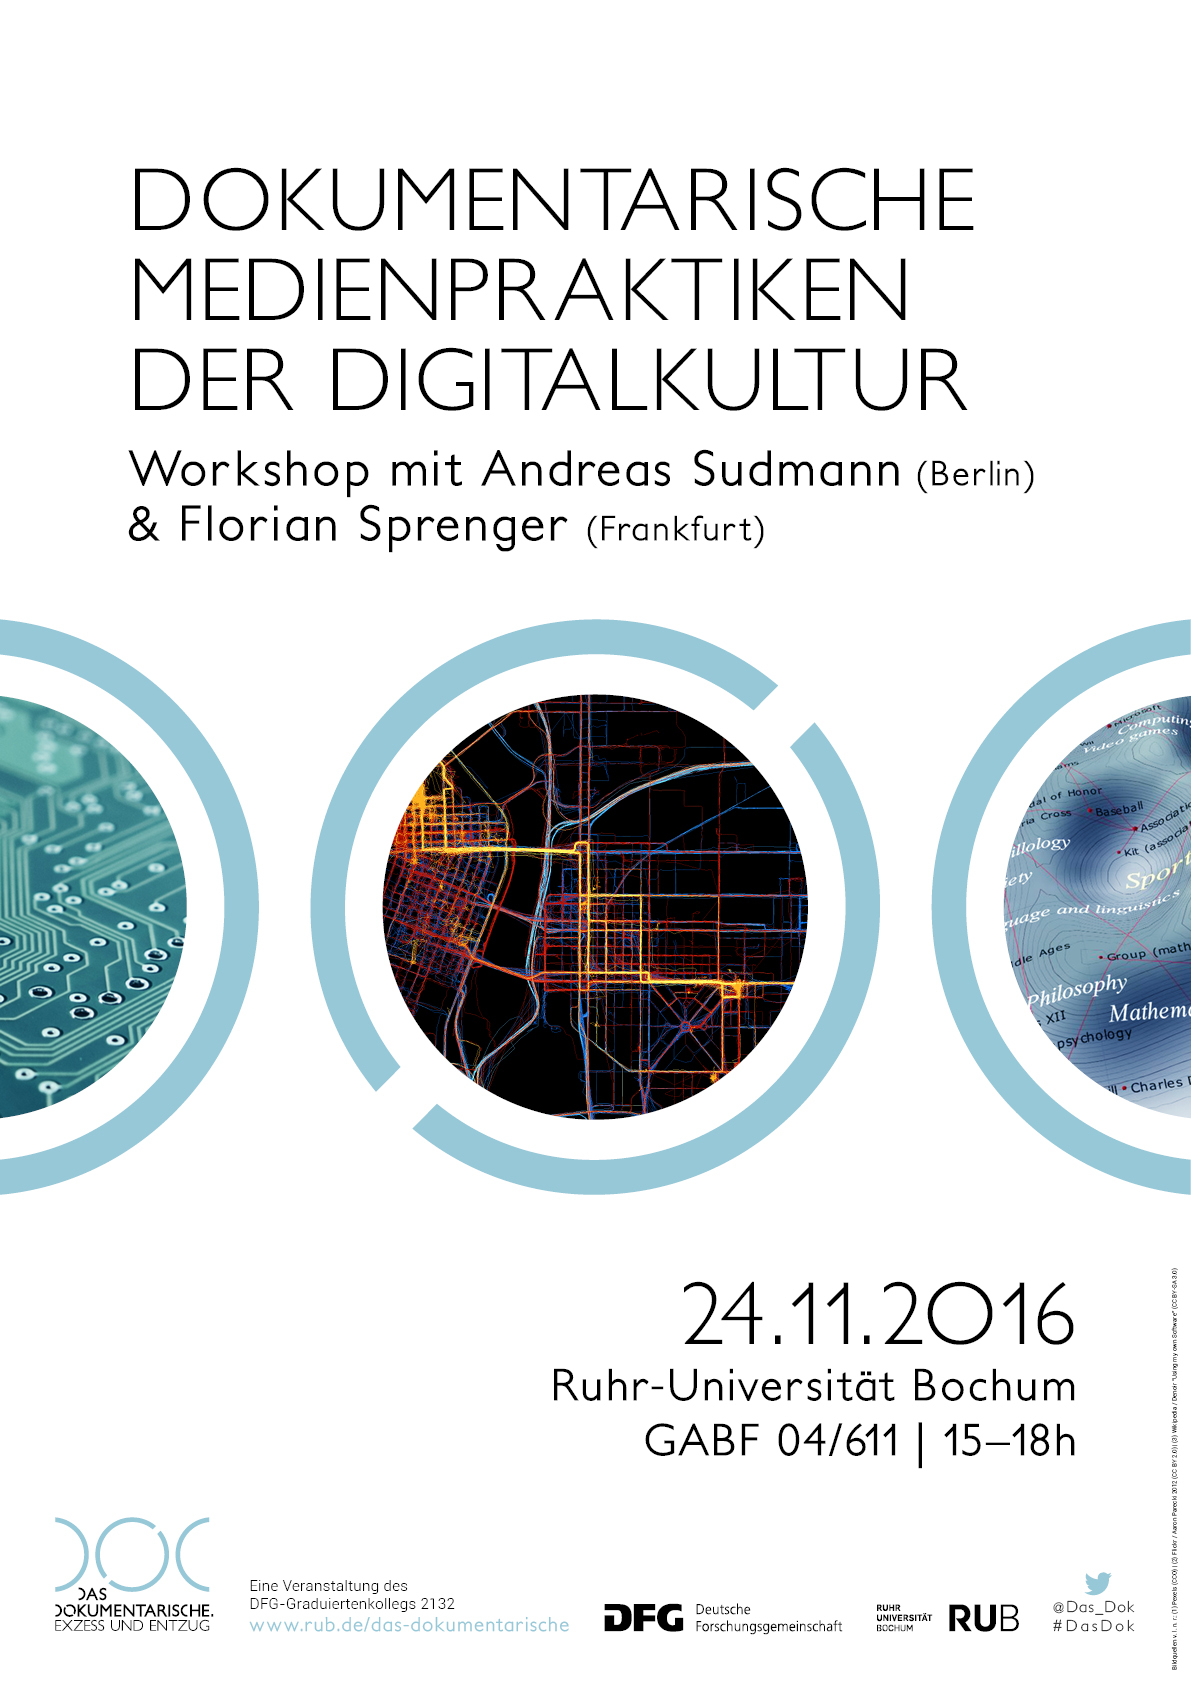 Dokumentarische Medienpraktiken der Digitalkultur | Workshop mit Andreas Sudmann und Florian Sprenger